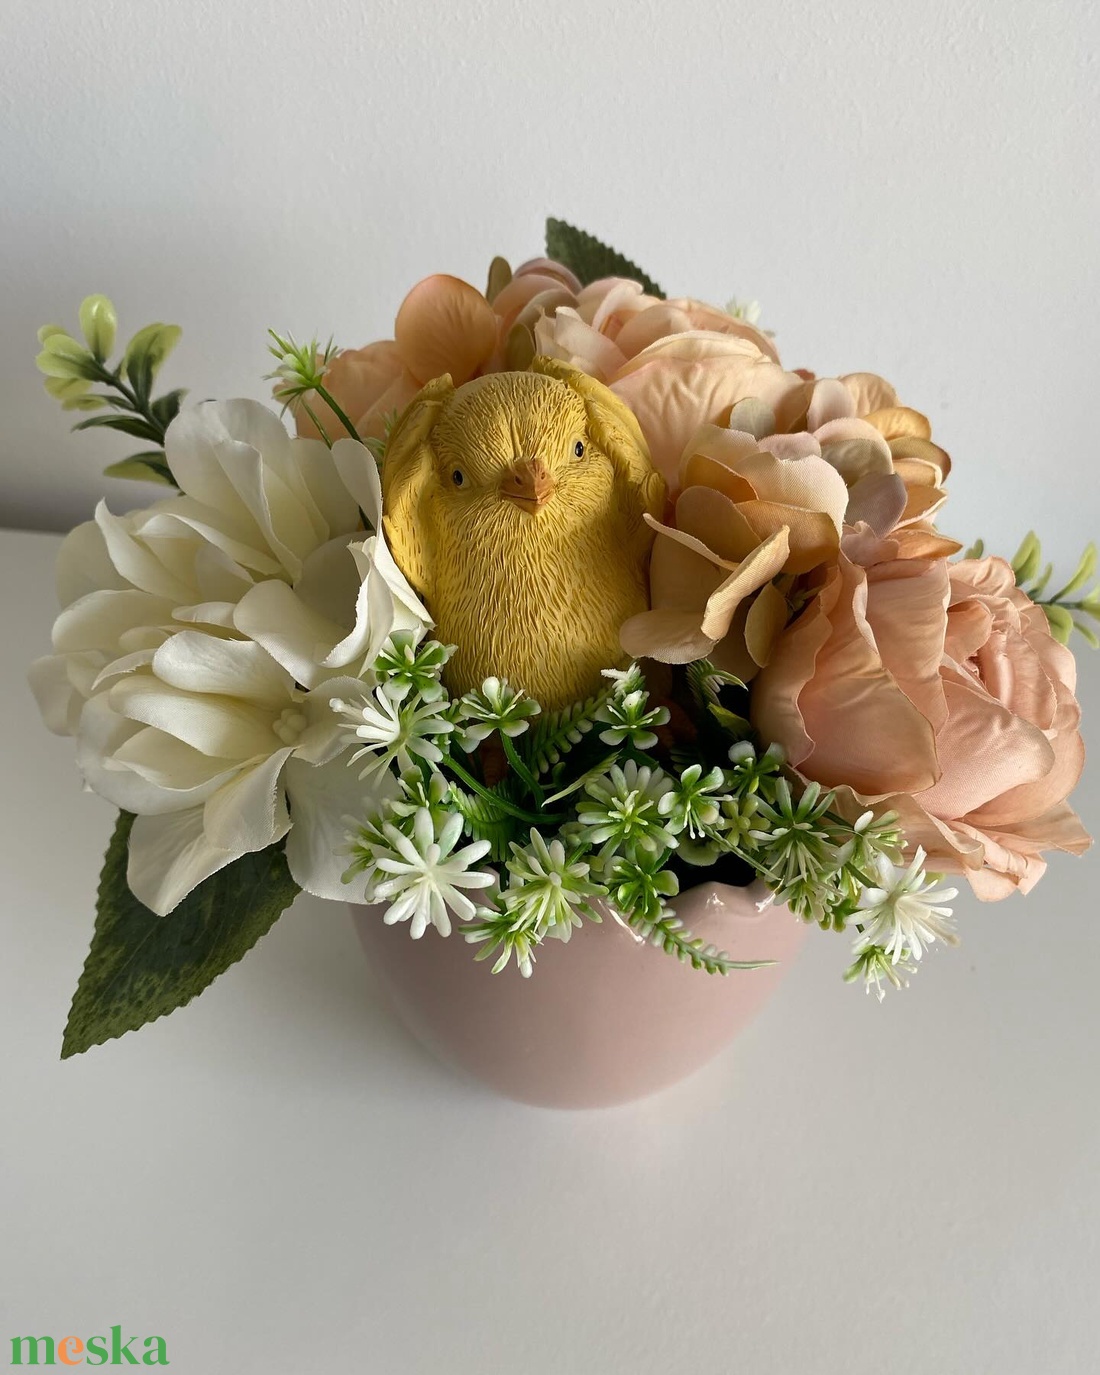 Kis csibés, tavaszi virágos asztaldísz tojáshéj mintás kaspóban - otthon & lakás - dekoráció - virágdísz és tartó - csokor & virágdísz - Meska.hu